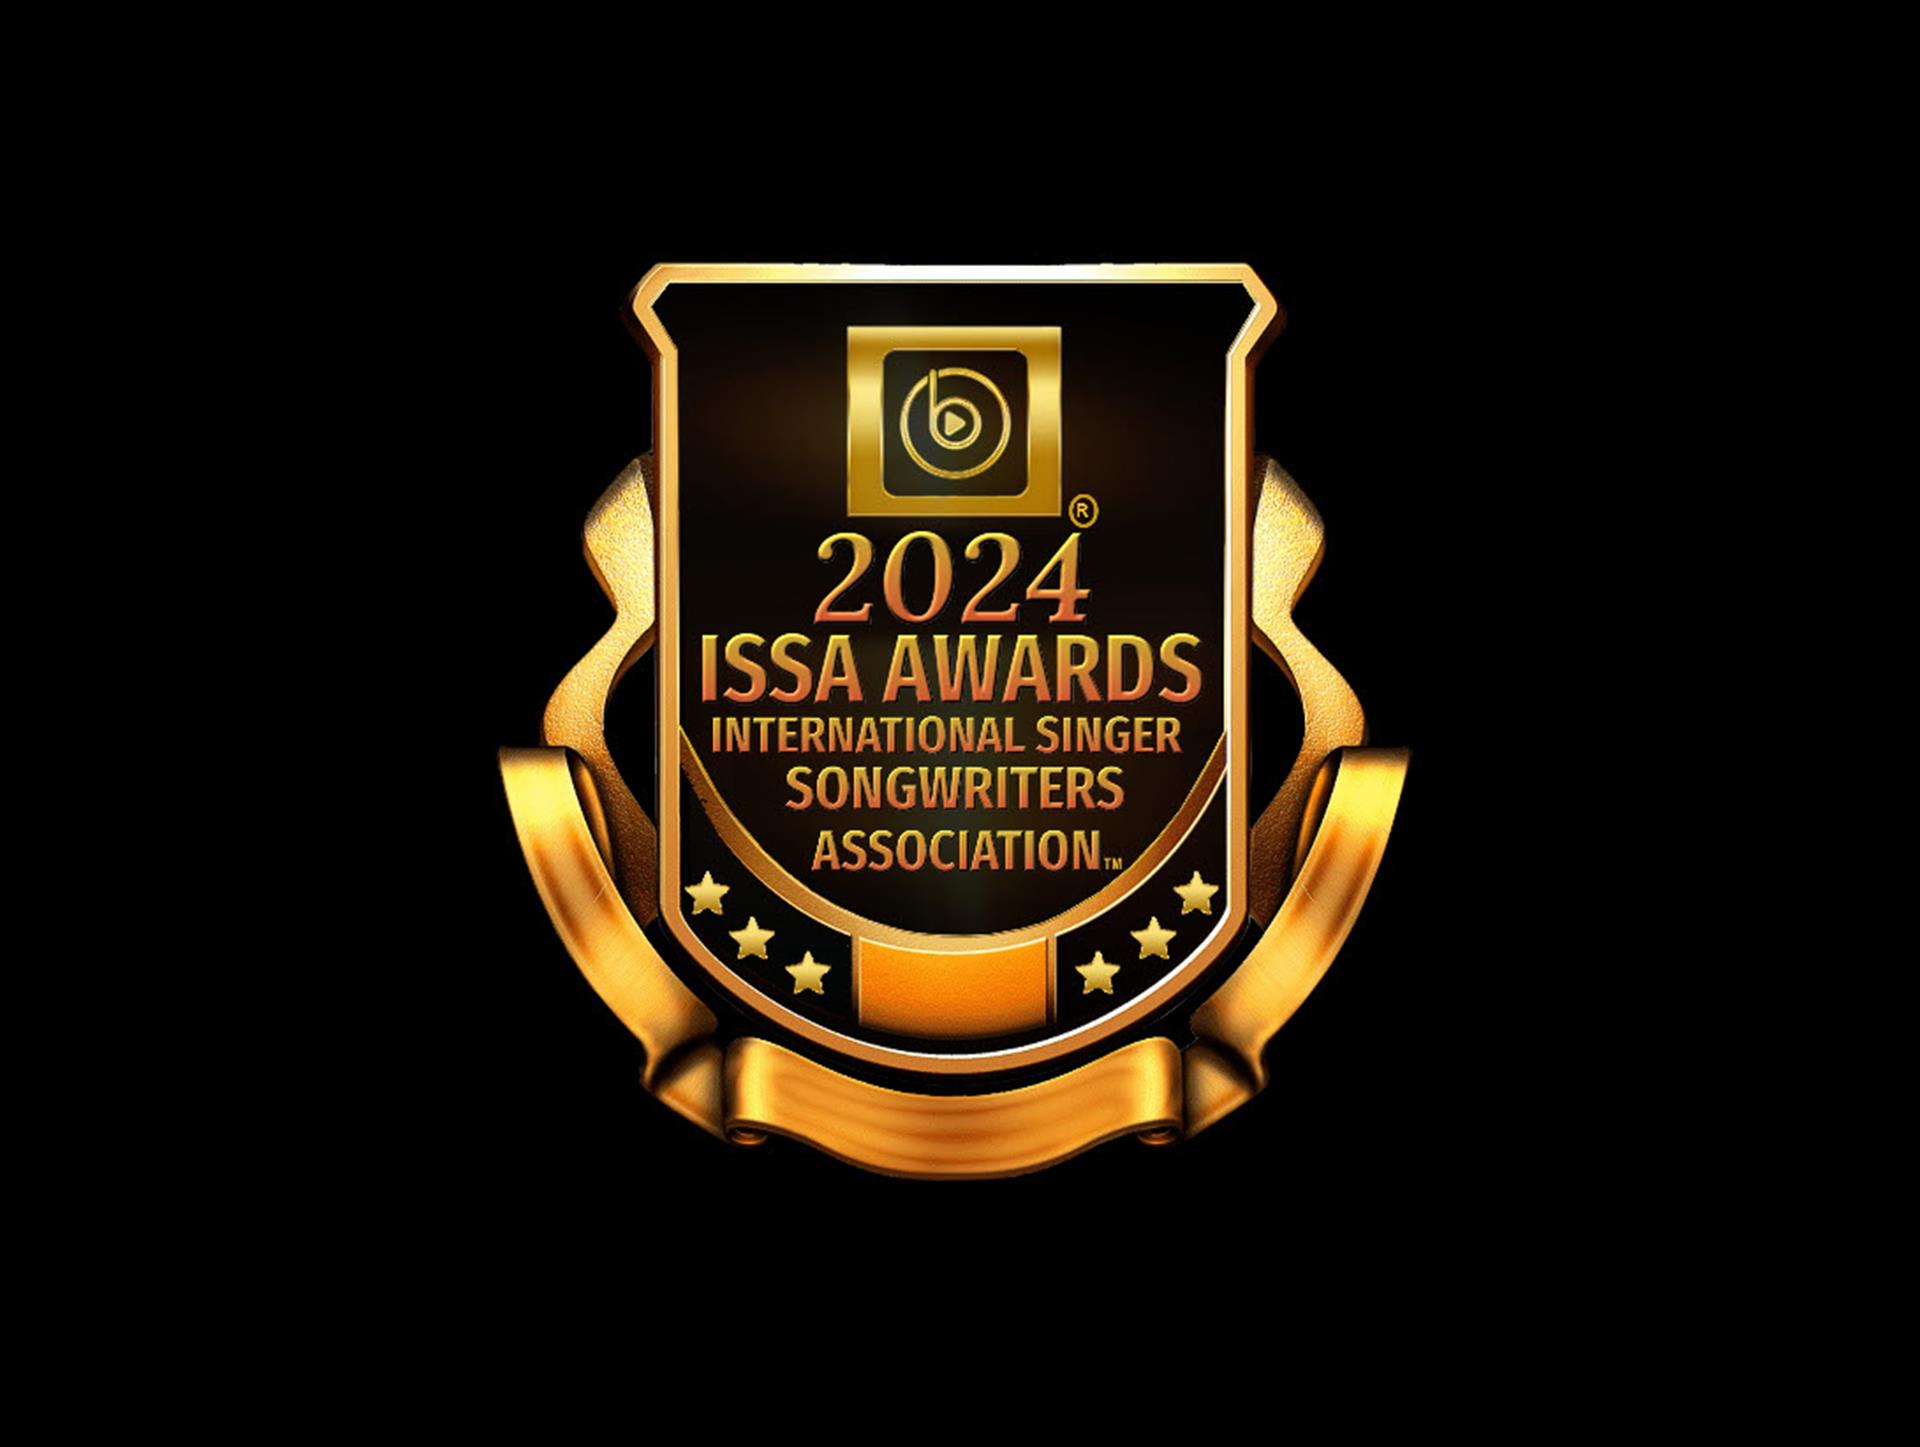 The 2024 ISSA Awards 